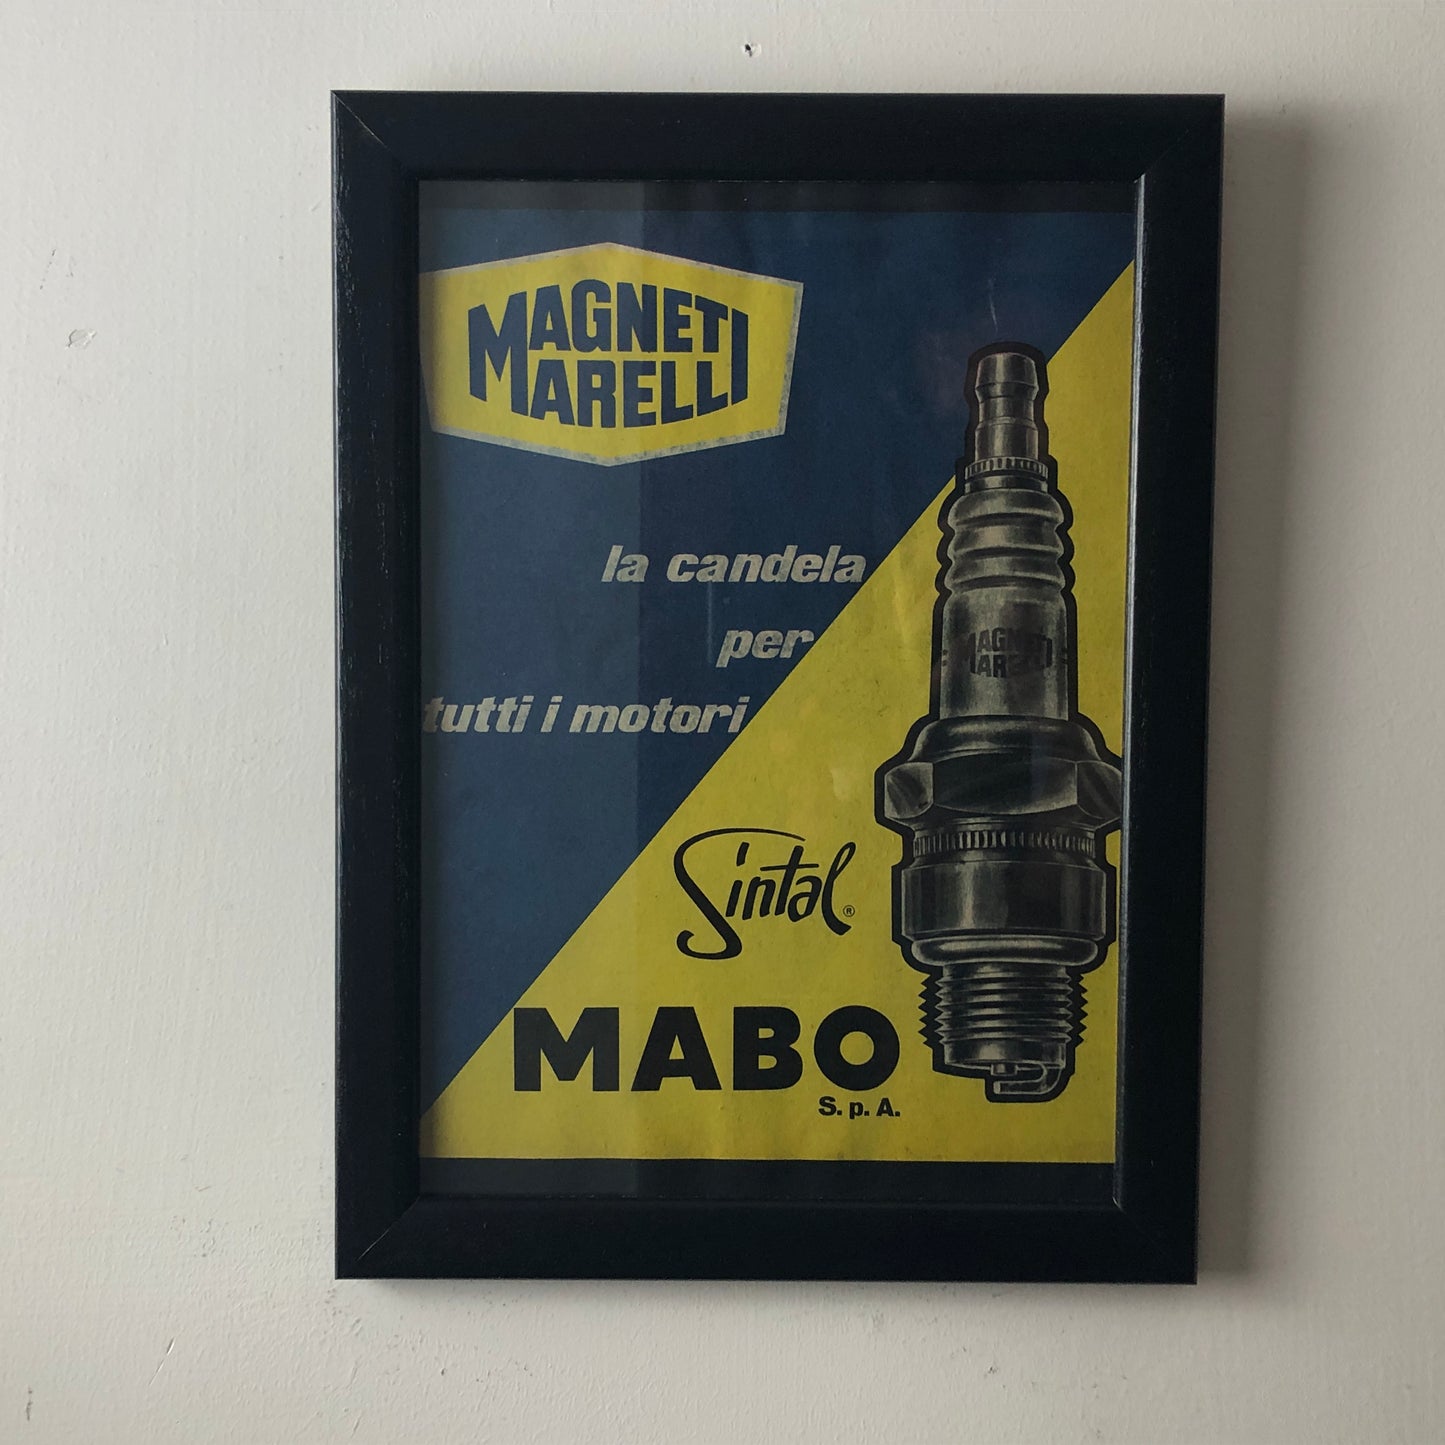 Magneti Marelli, Pubblicità Anno 1960 Candele Magneti Marelli Sintal Disegnata da Amleto Dalla Costa